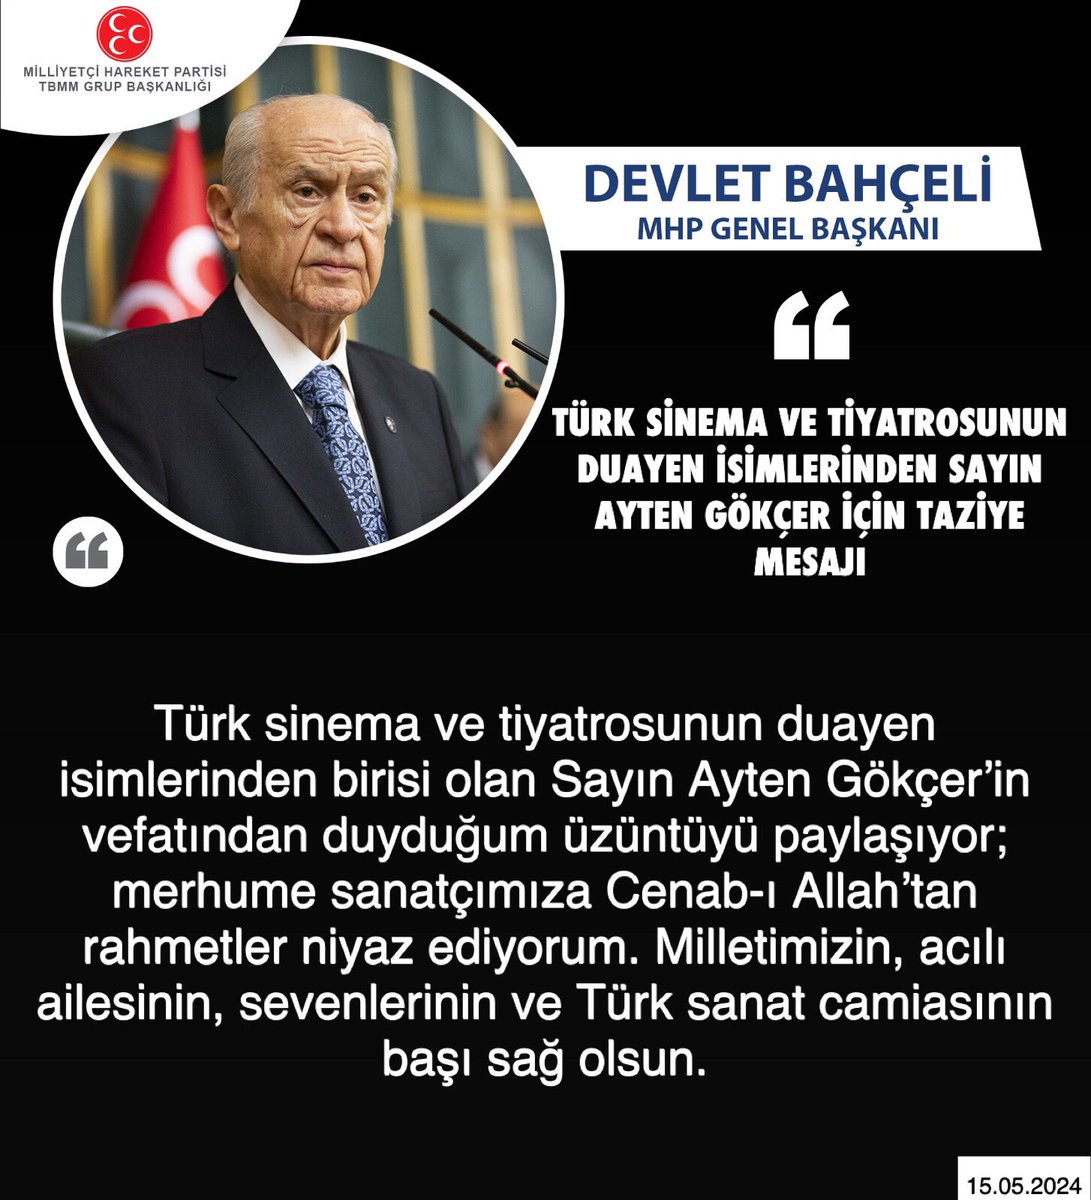 Genel Başkanımız Sayın Devlet Bahçeli @dbdevletbahceli: Türk sinema ve tiyatrosunun duayen isimlerinden Sayın Ayten Gökçer için taziye mesajı